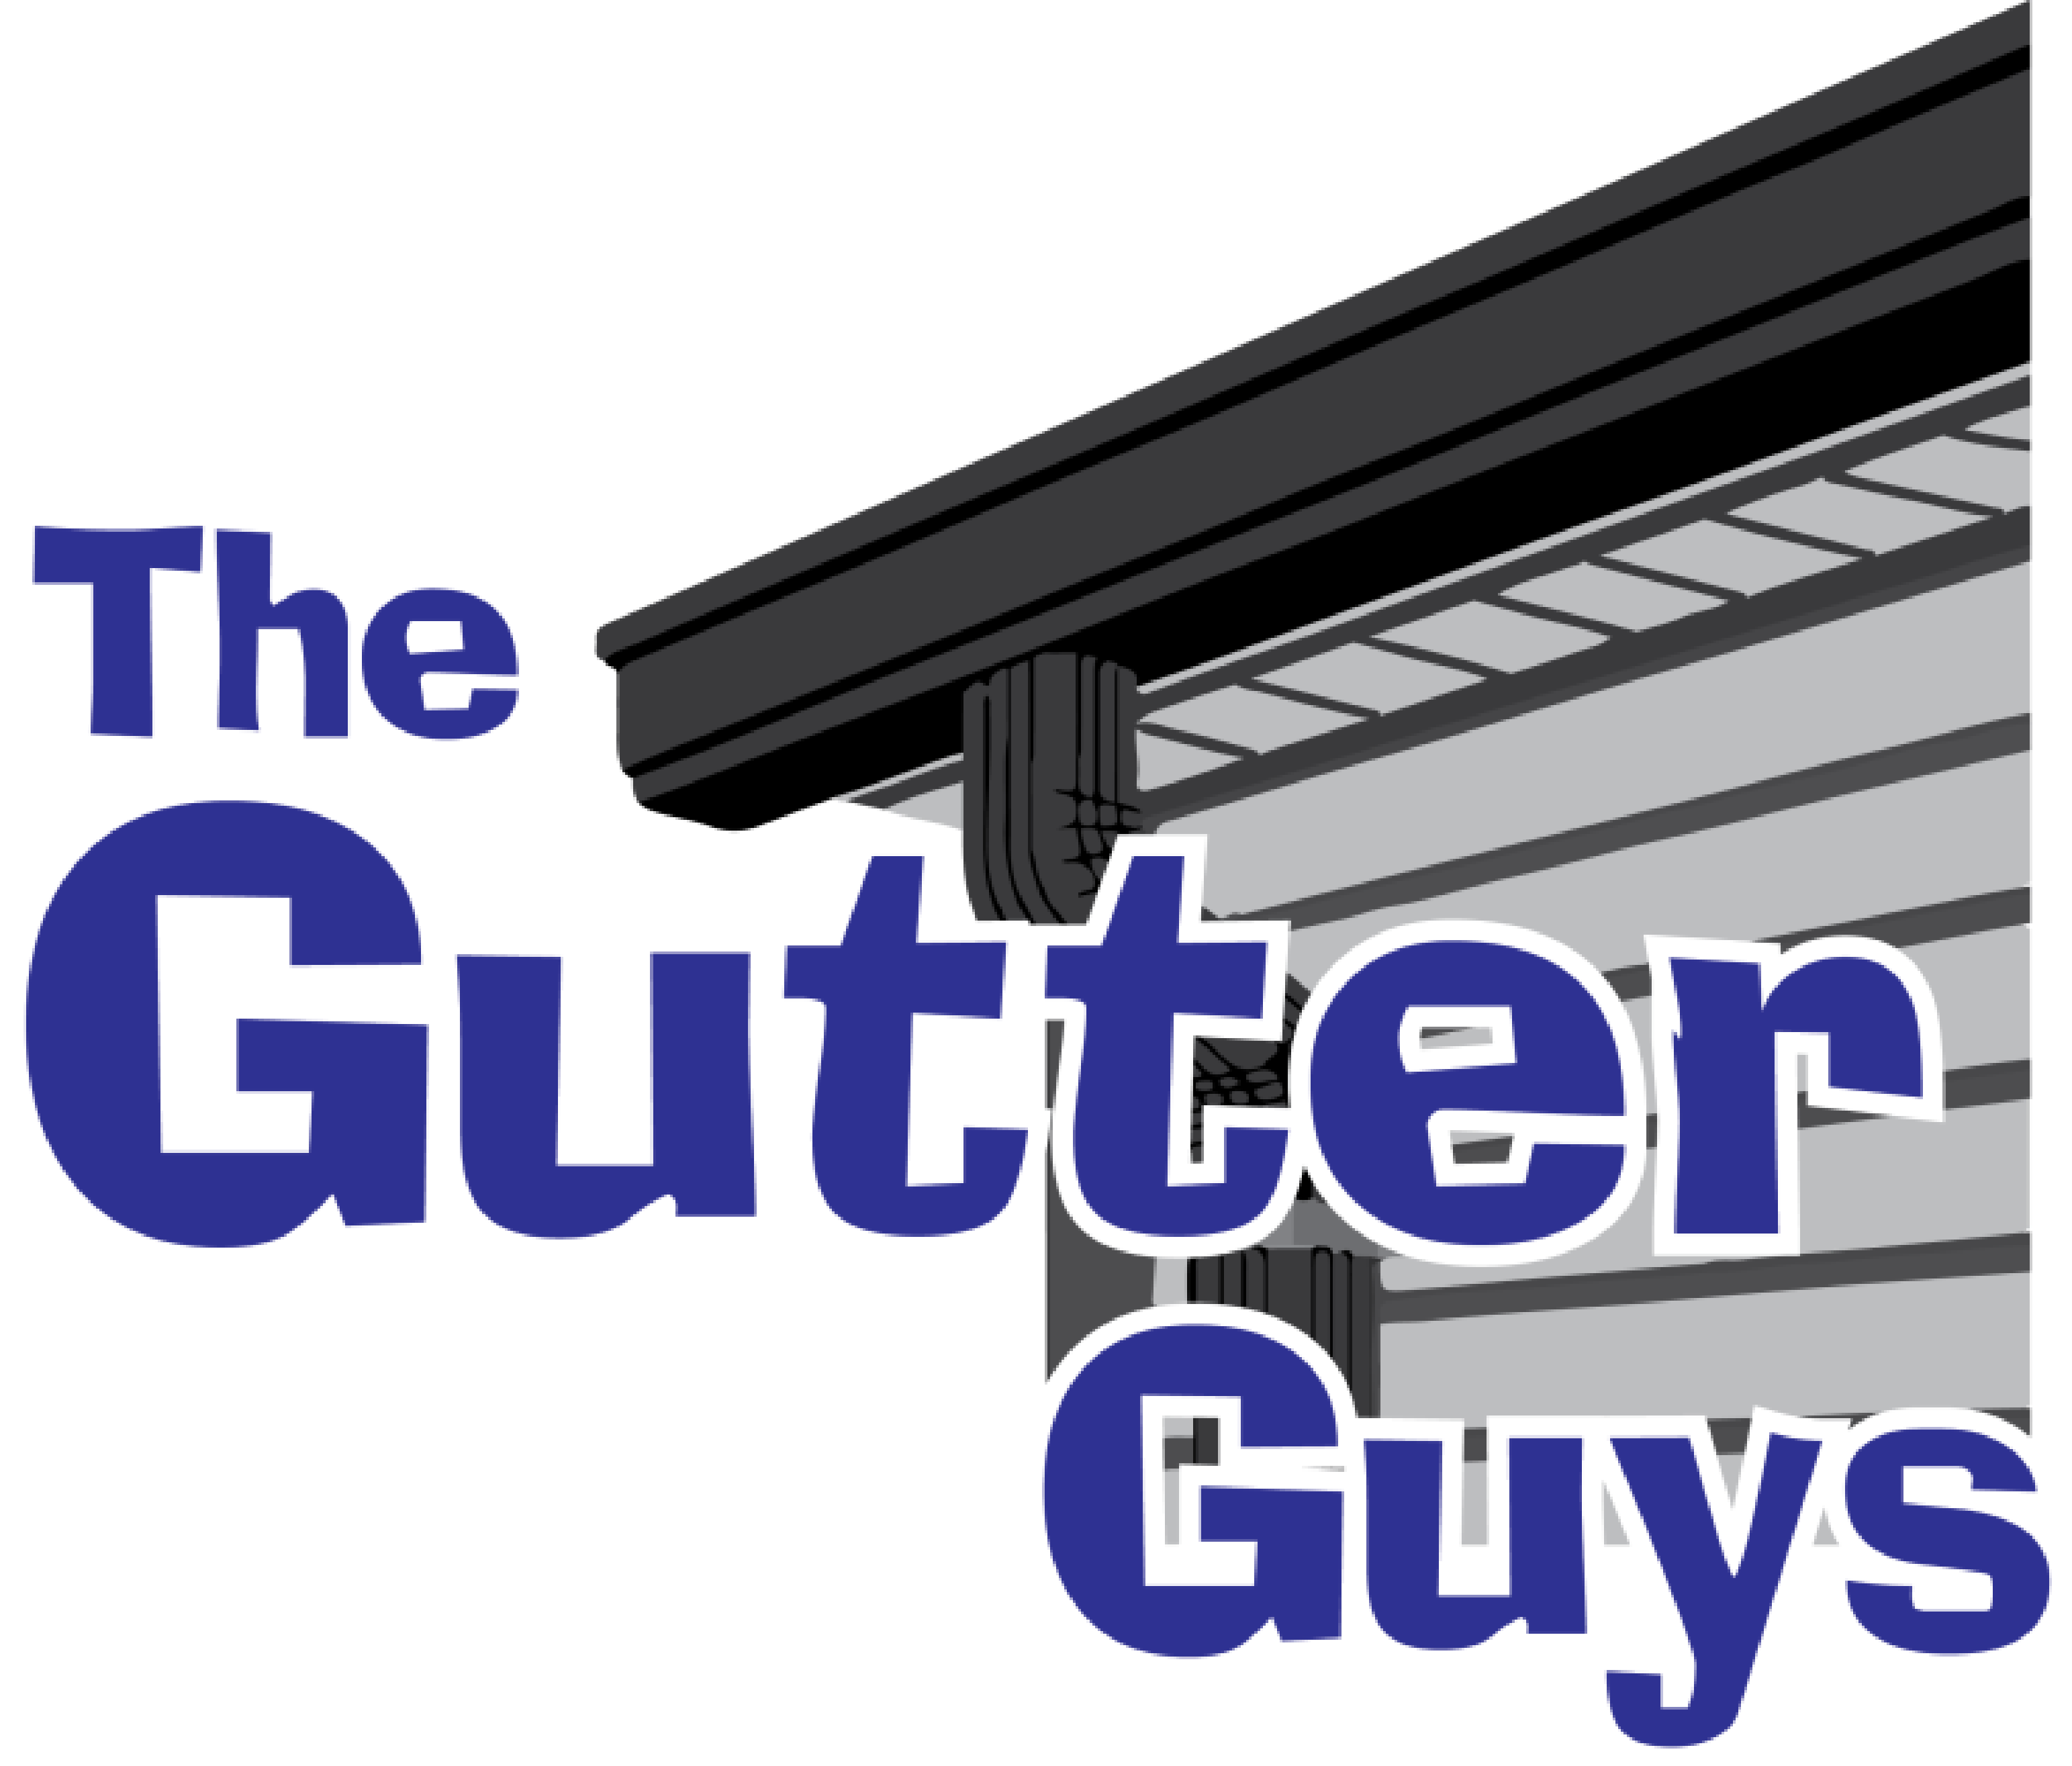 The Gutter Guys logo